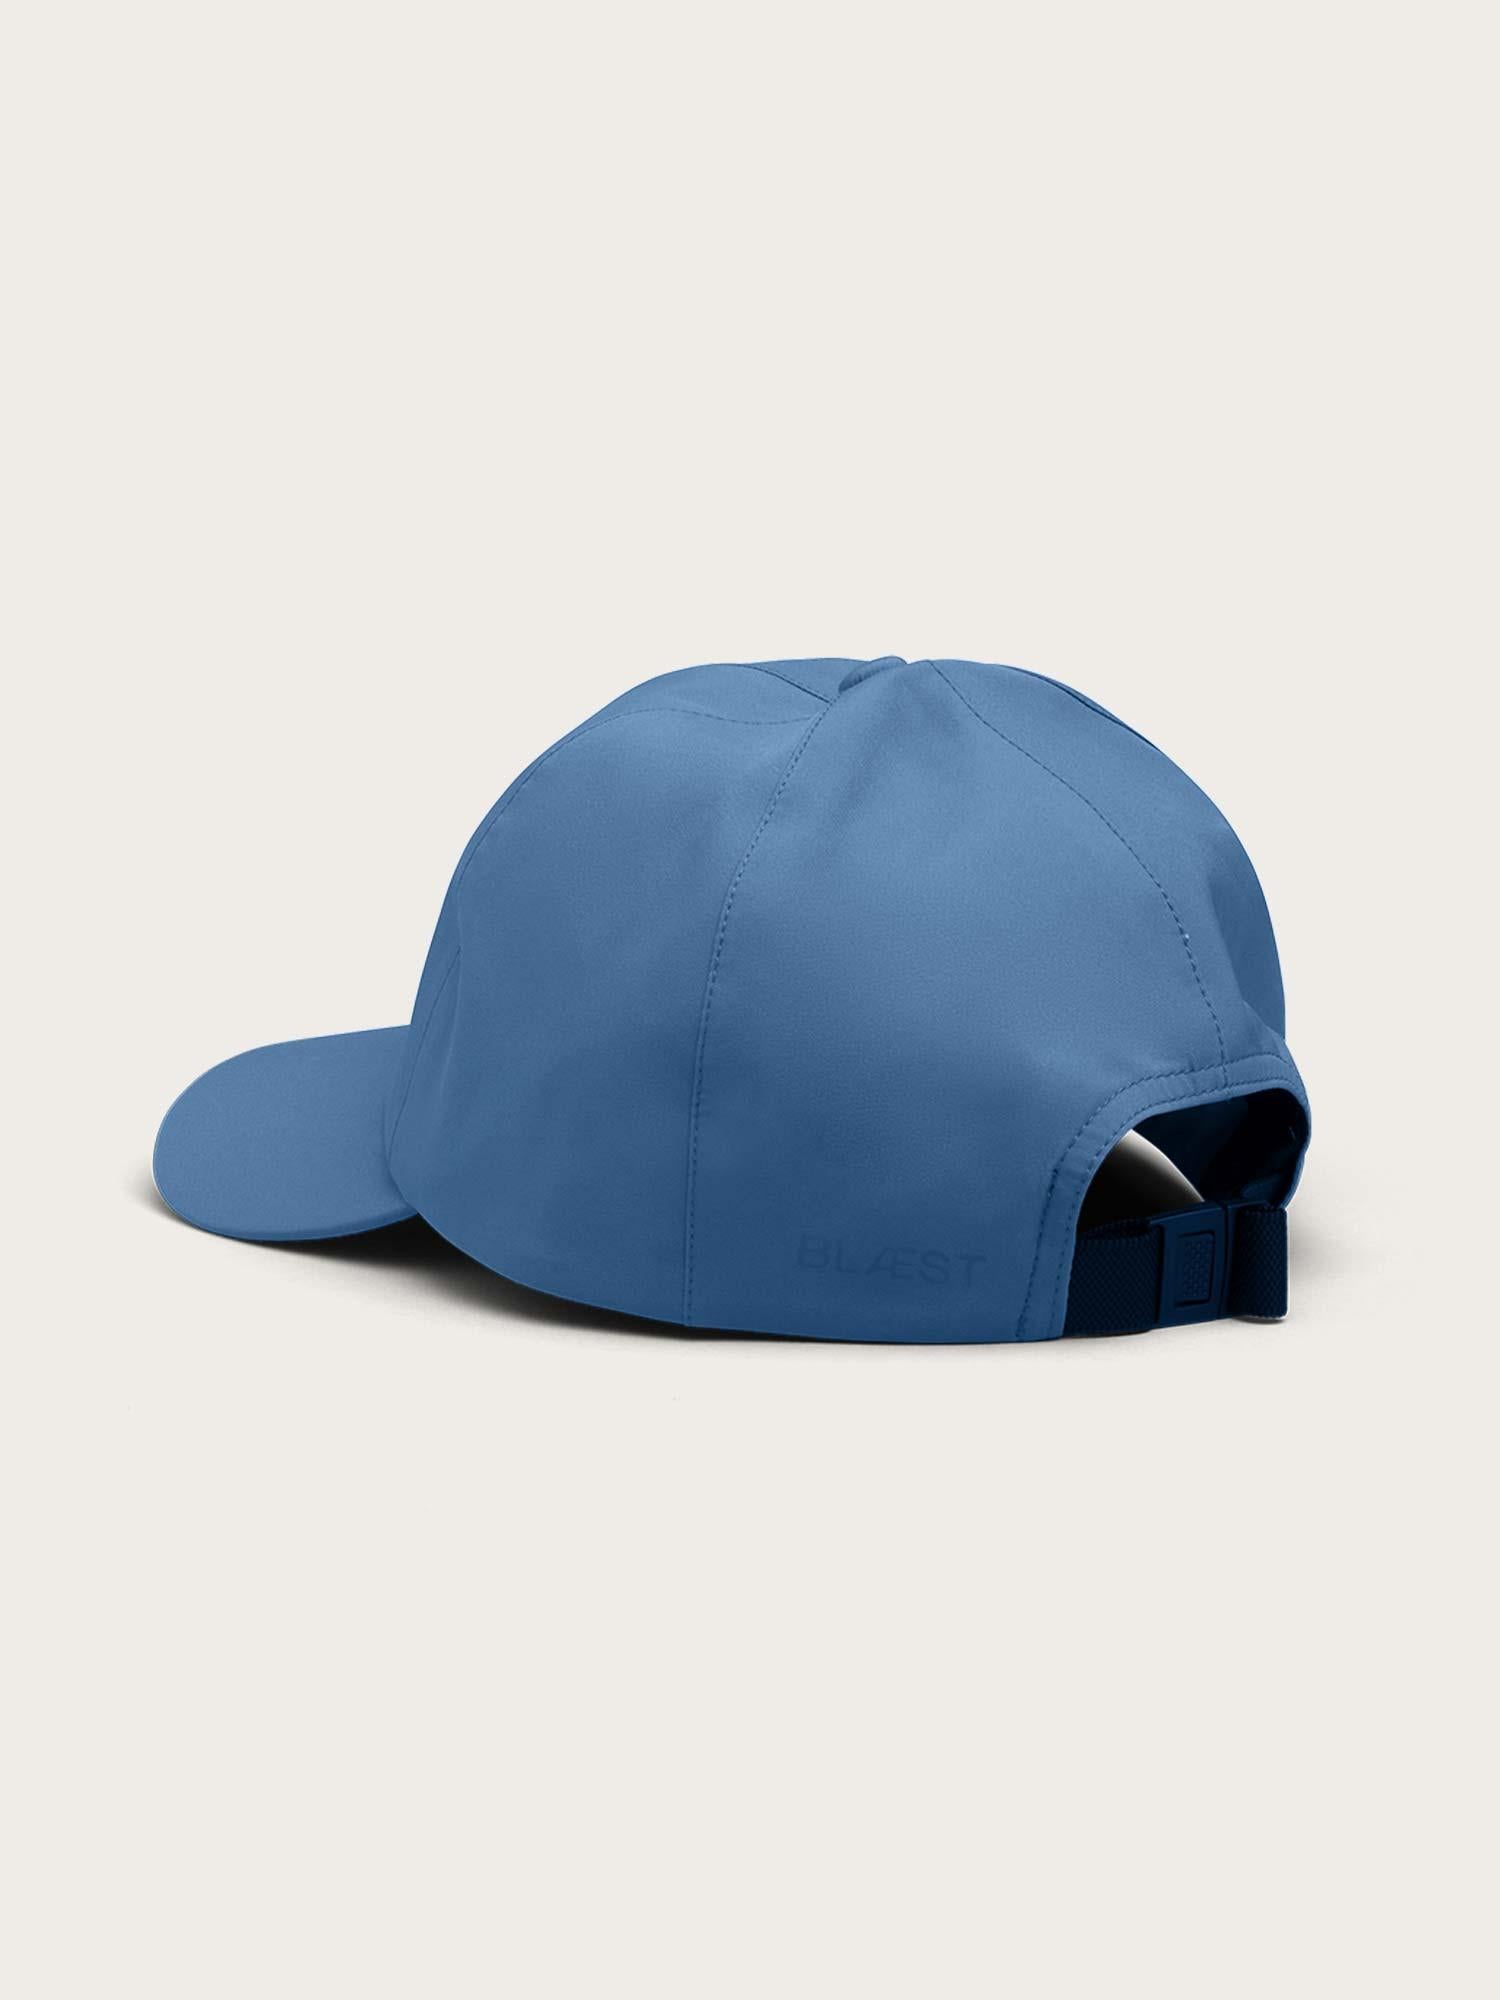 Hatlane Caps - Coronet Blue